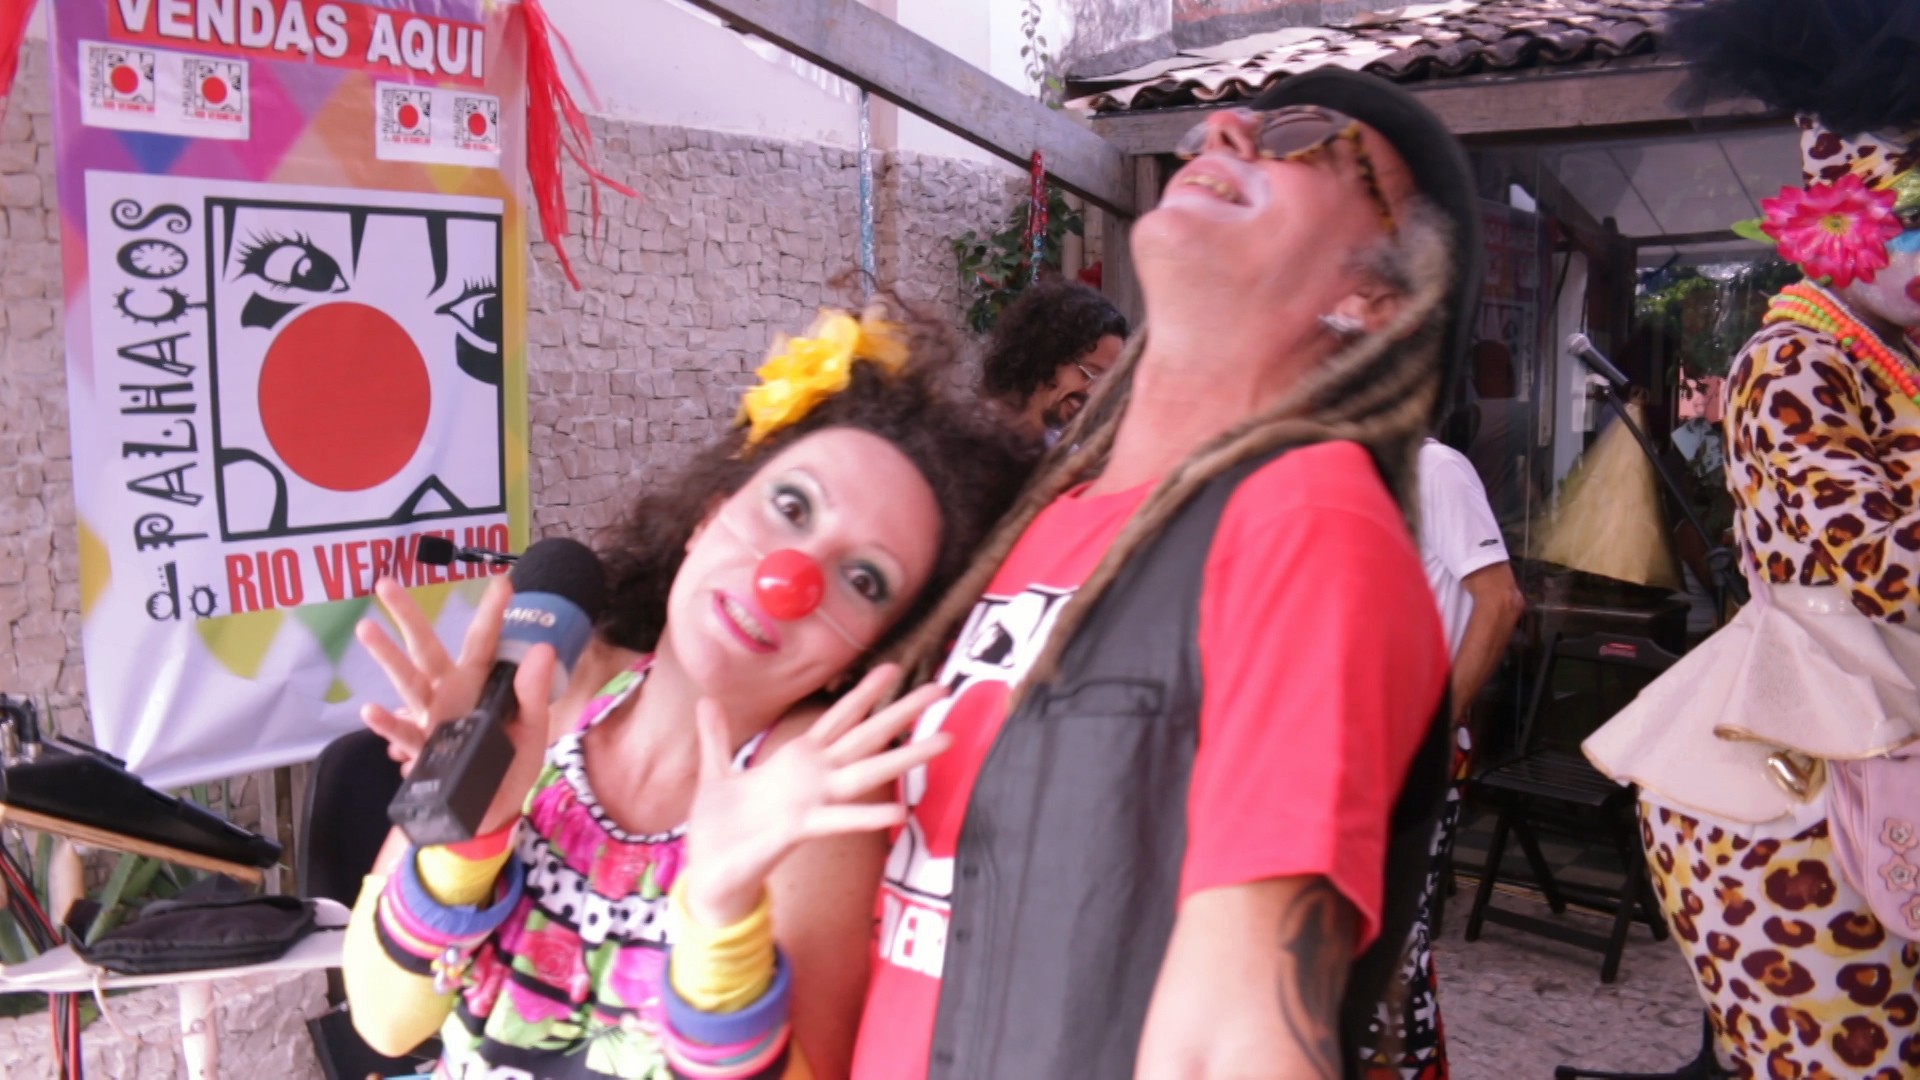 GSHOW - Palhaços levam alegria e brincadeira para o carnaval do ... - Globo.com